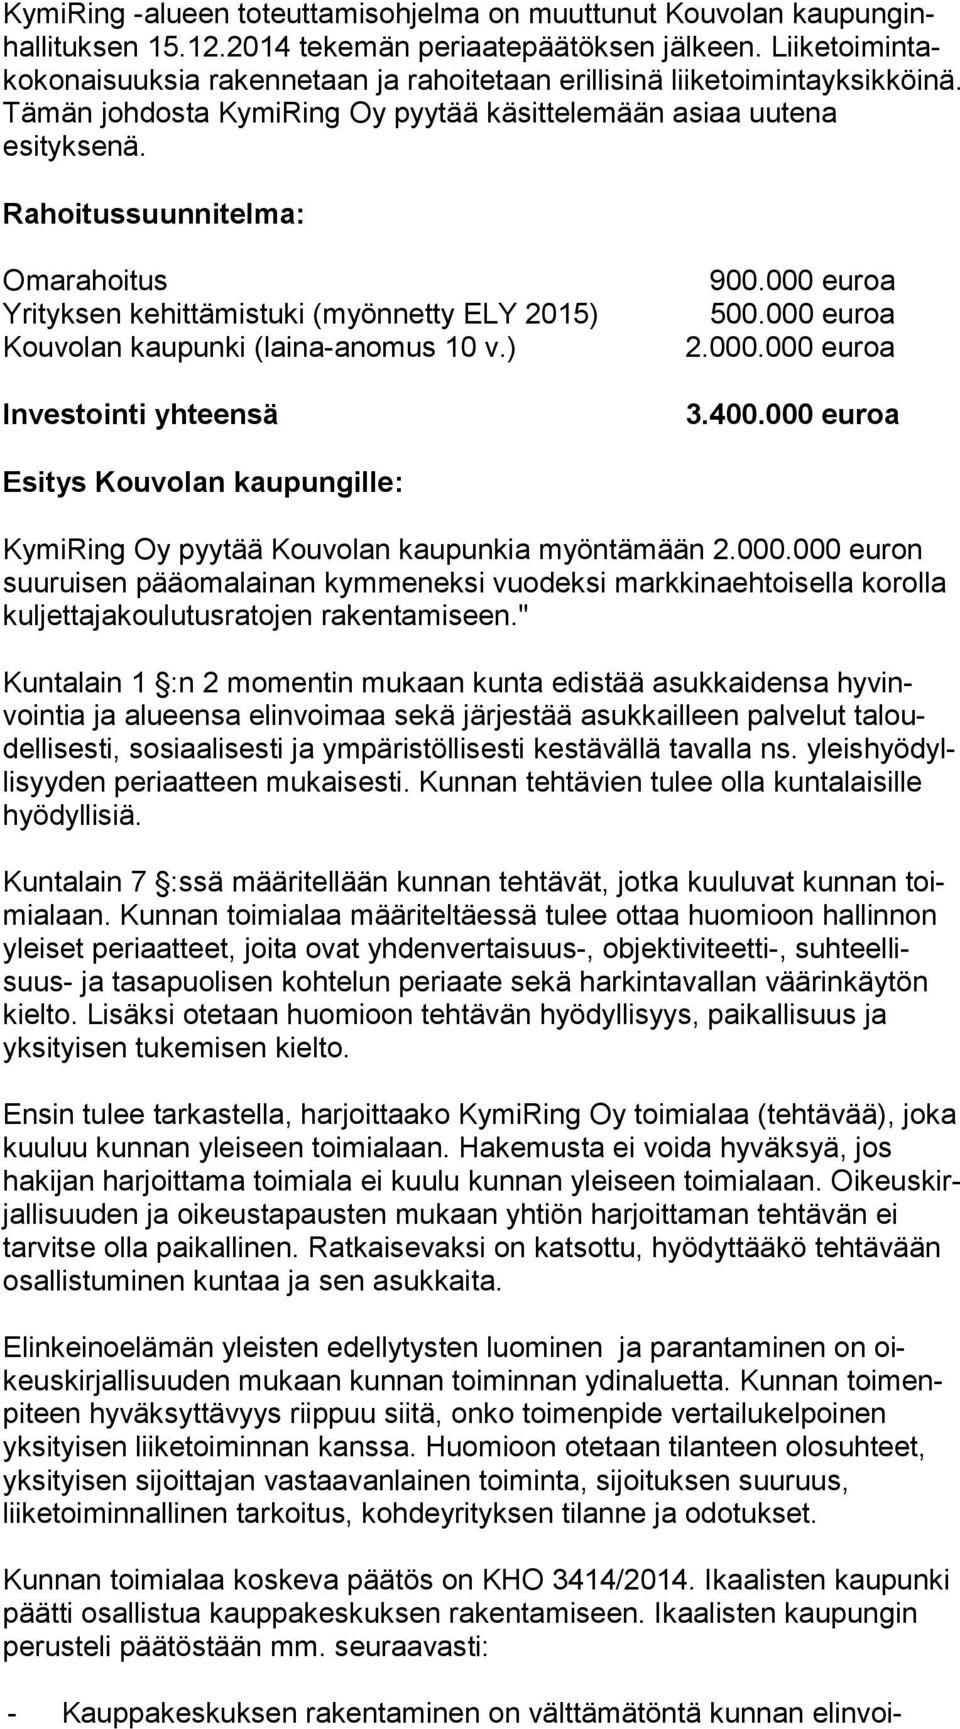 Rahoitussuunnitelma: Omarahoitus Yrityksen kehittämistuki (myönnetty ELY 2015) Kouvolan kaupunki (laina-anomus 10 v.) Investointi yhteensä 900.000 euroa 500.000 euroa 2.000.000 euroa 3.400.